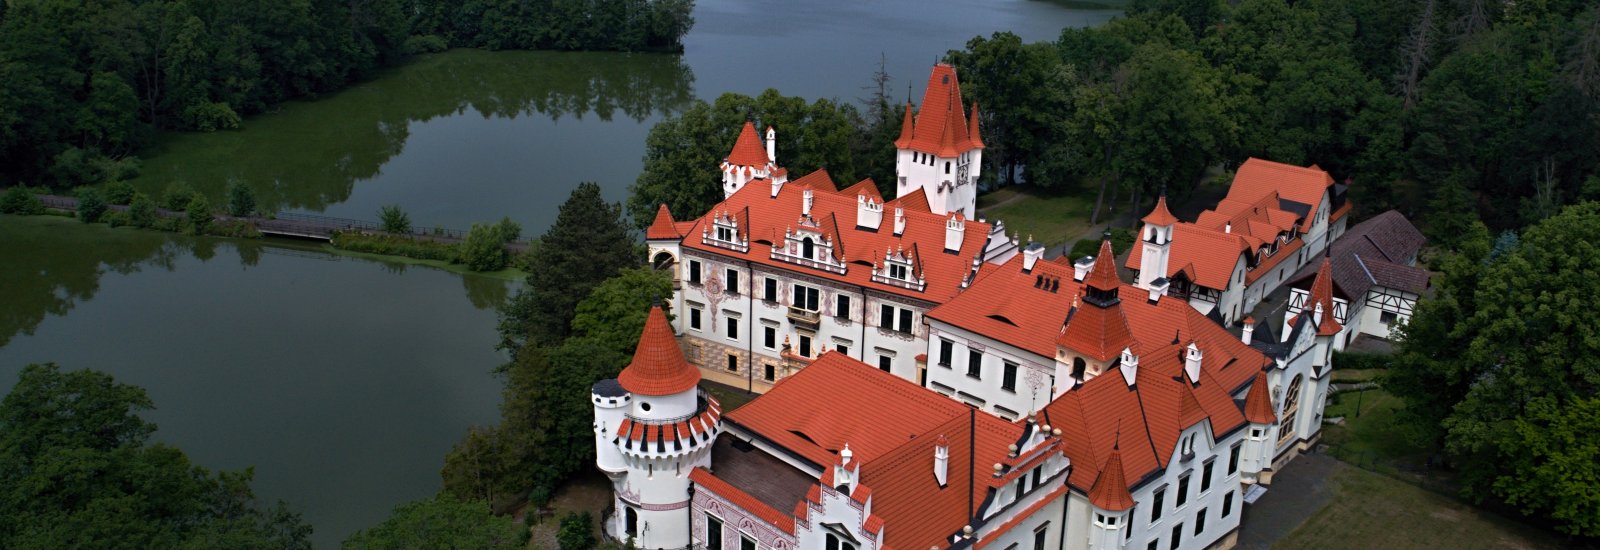 Château Žinkovy in Plzen mesto, Czech Republic